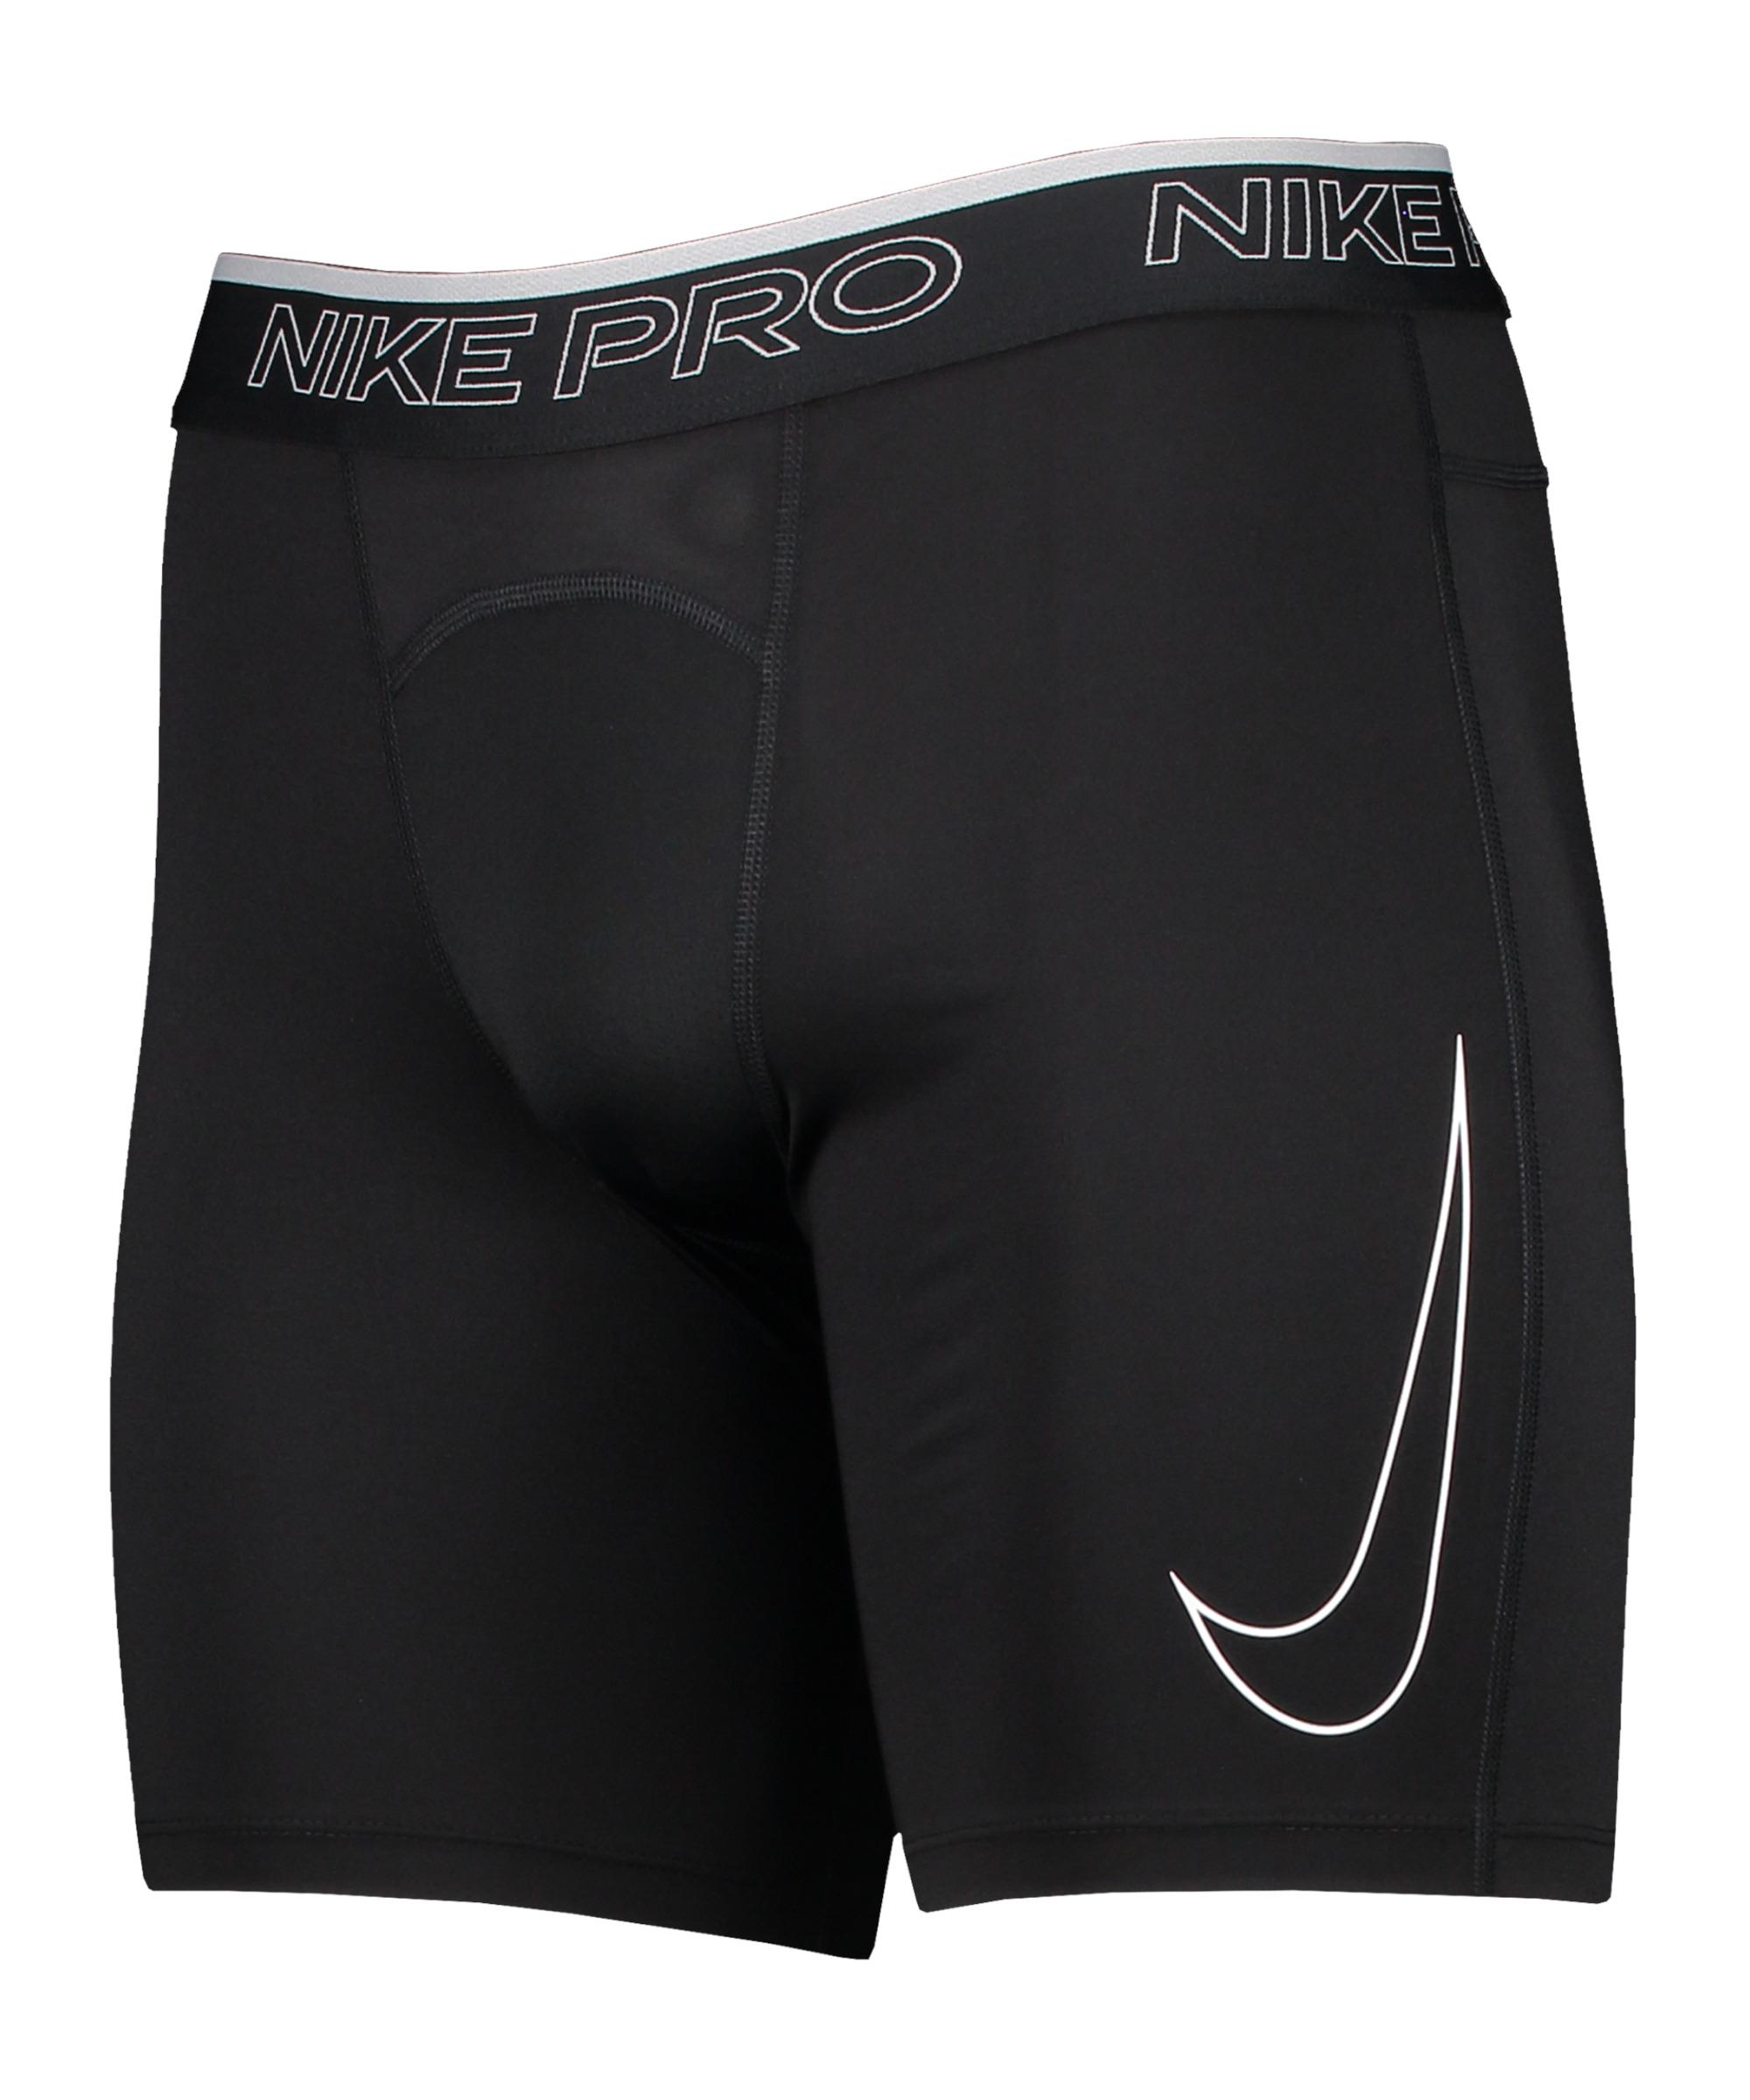 Shop von Nike Dri-Fit im SportScheck Pro Funktionsshorts Online Herren black-white kaufen